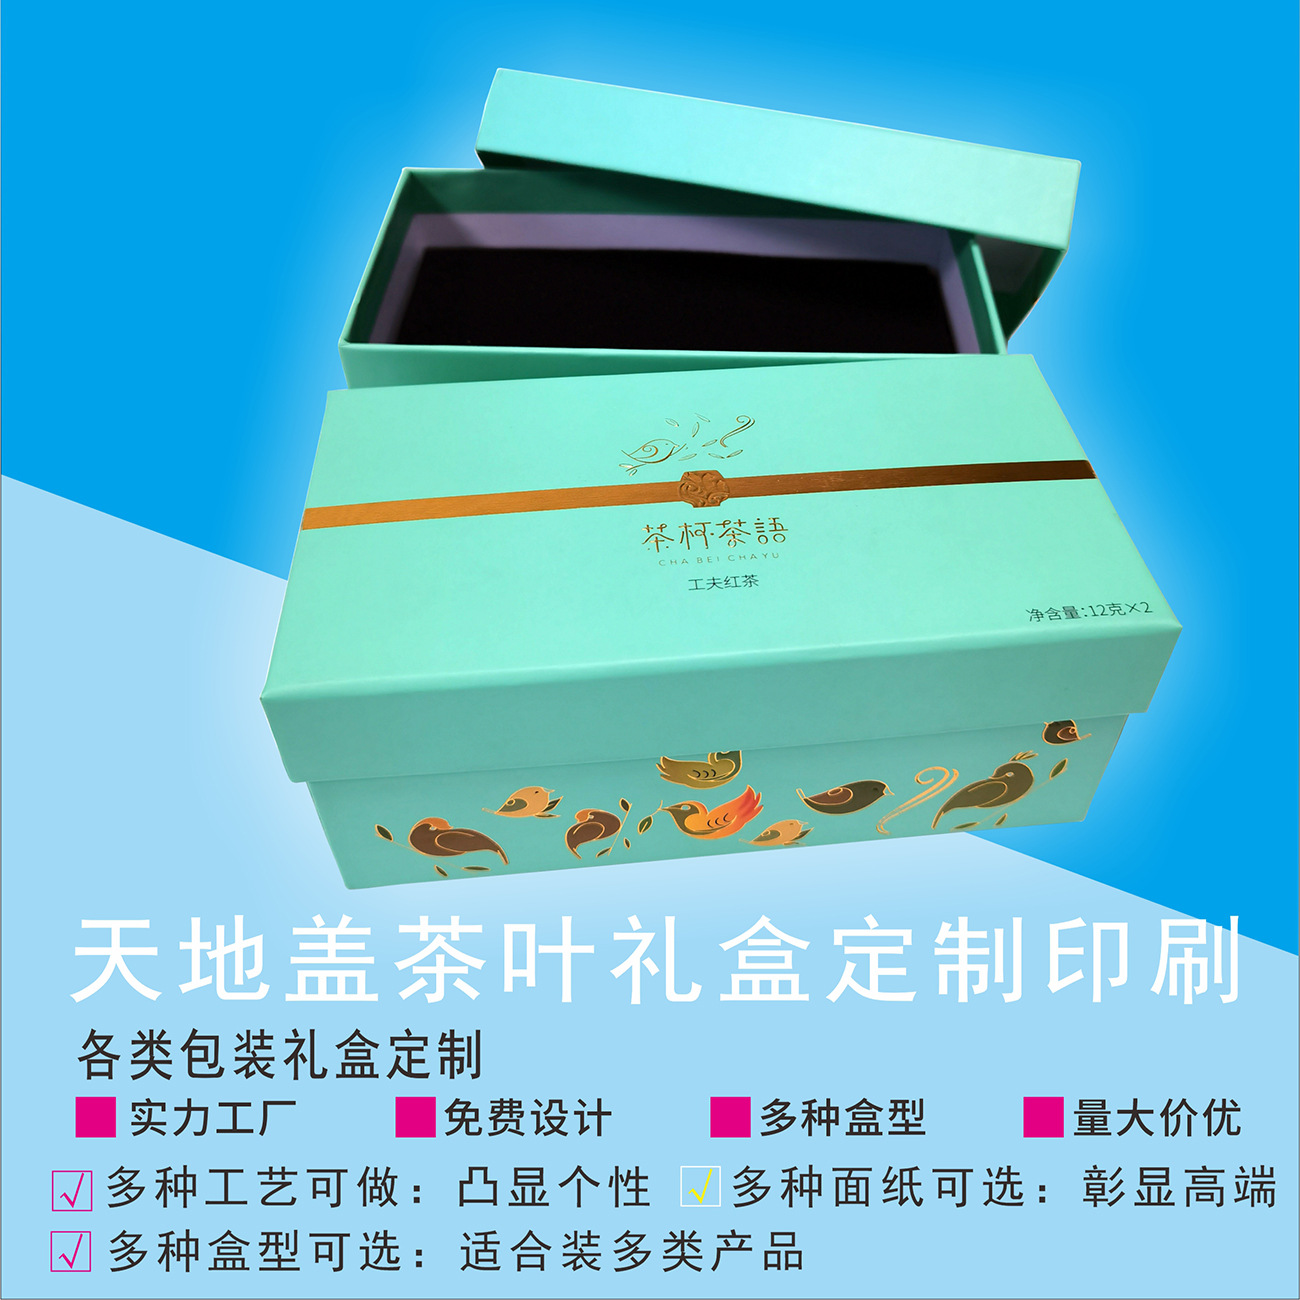 茶叶盒、精装茶叶礼盒、茶叶包装盒等设计印刷制作